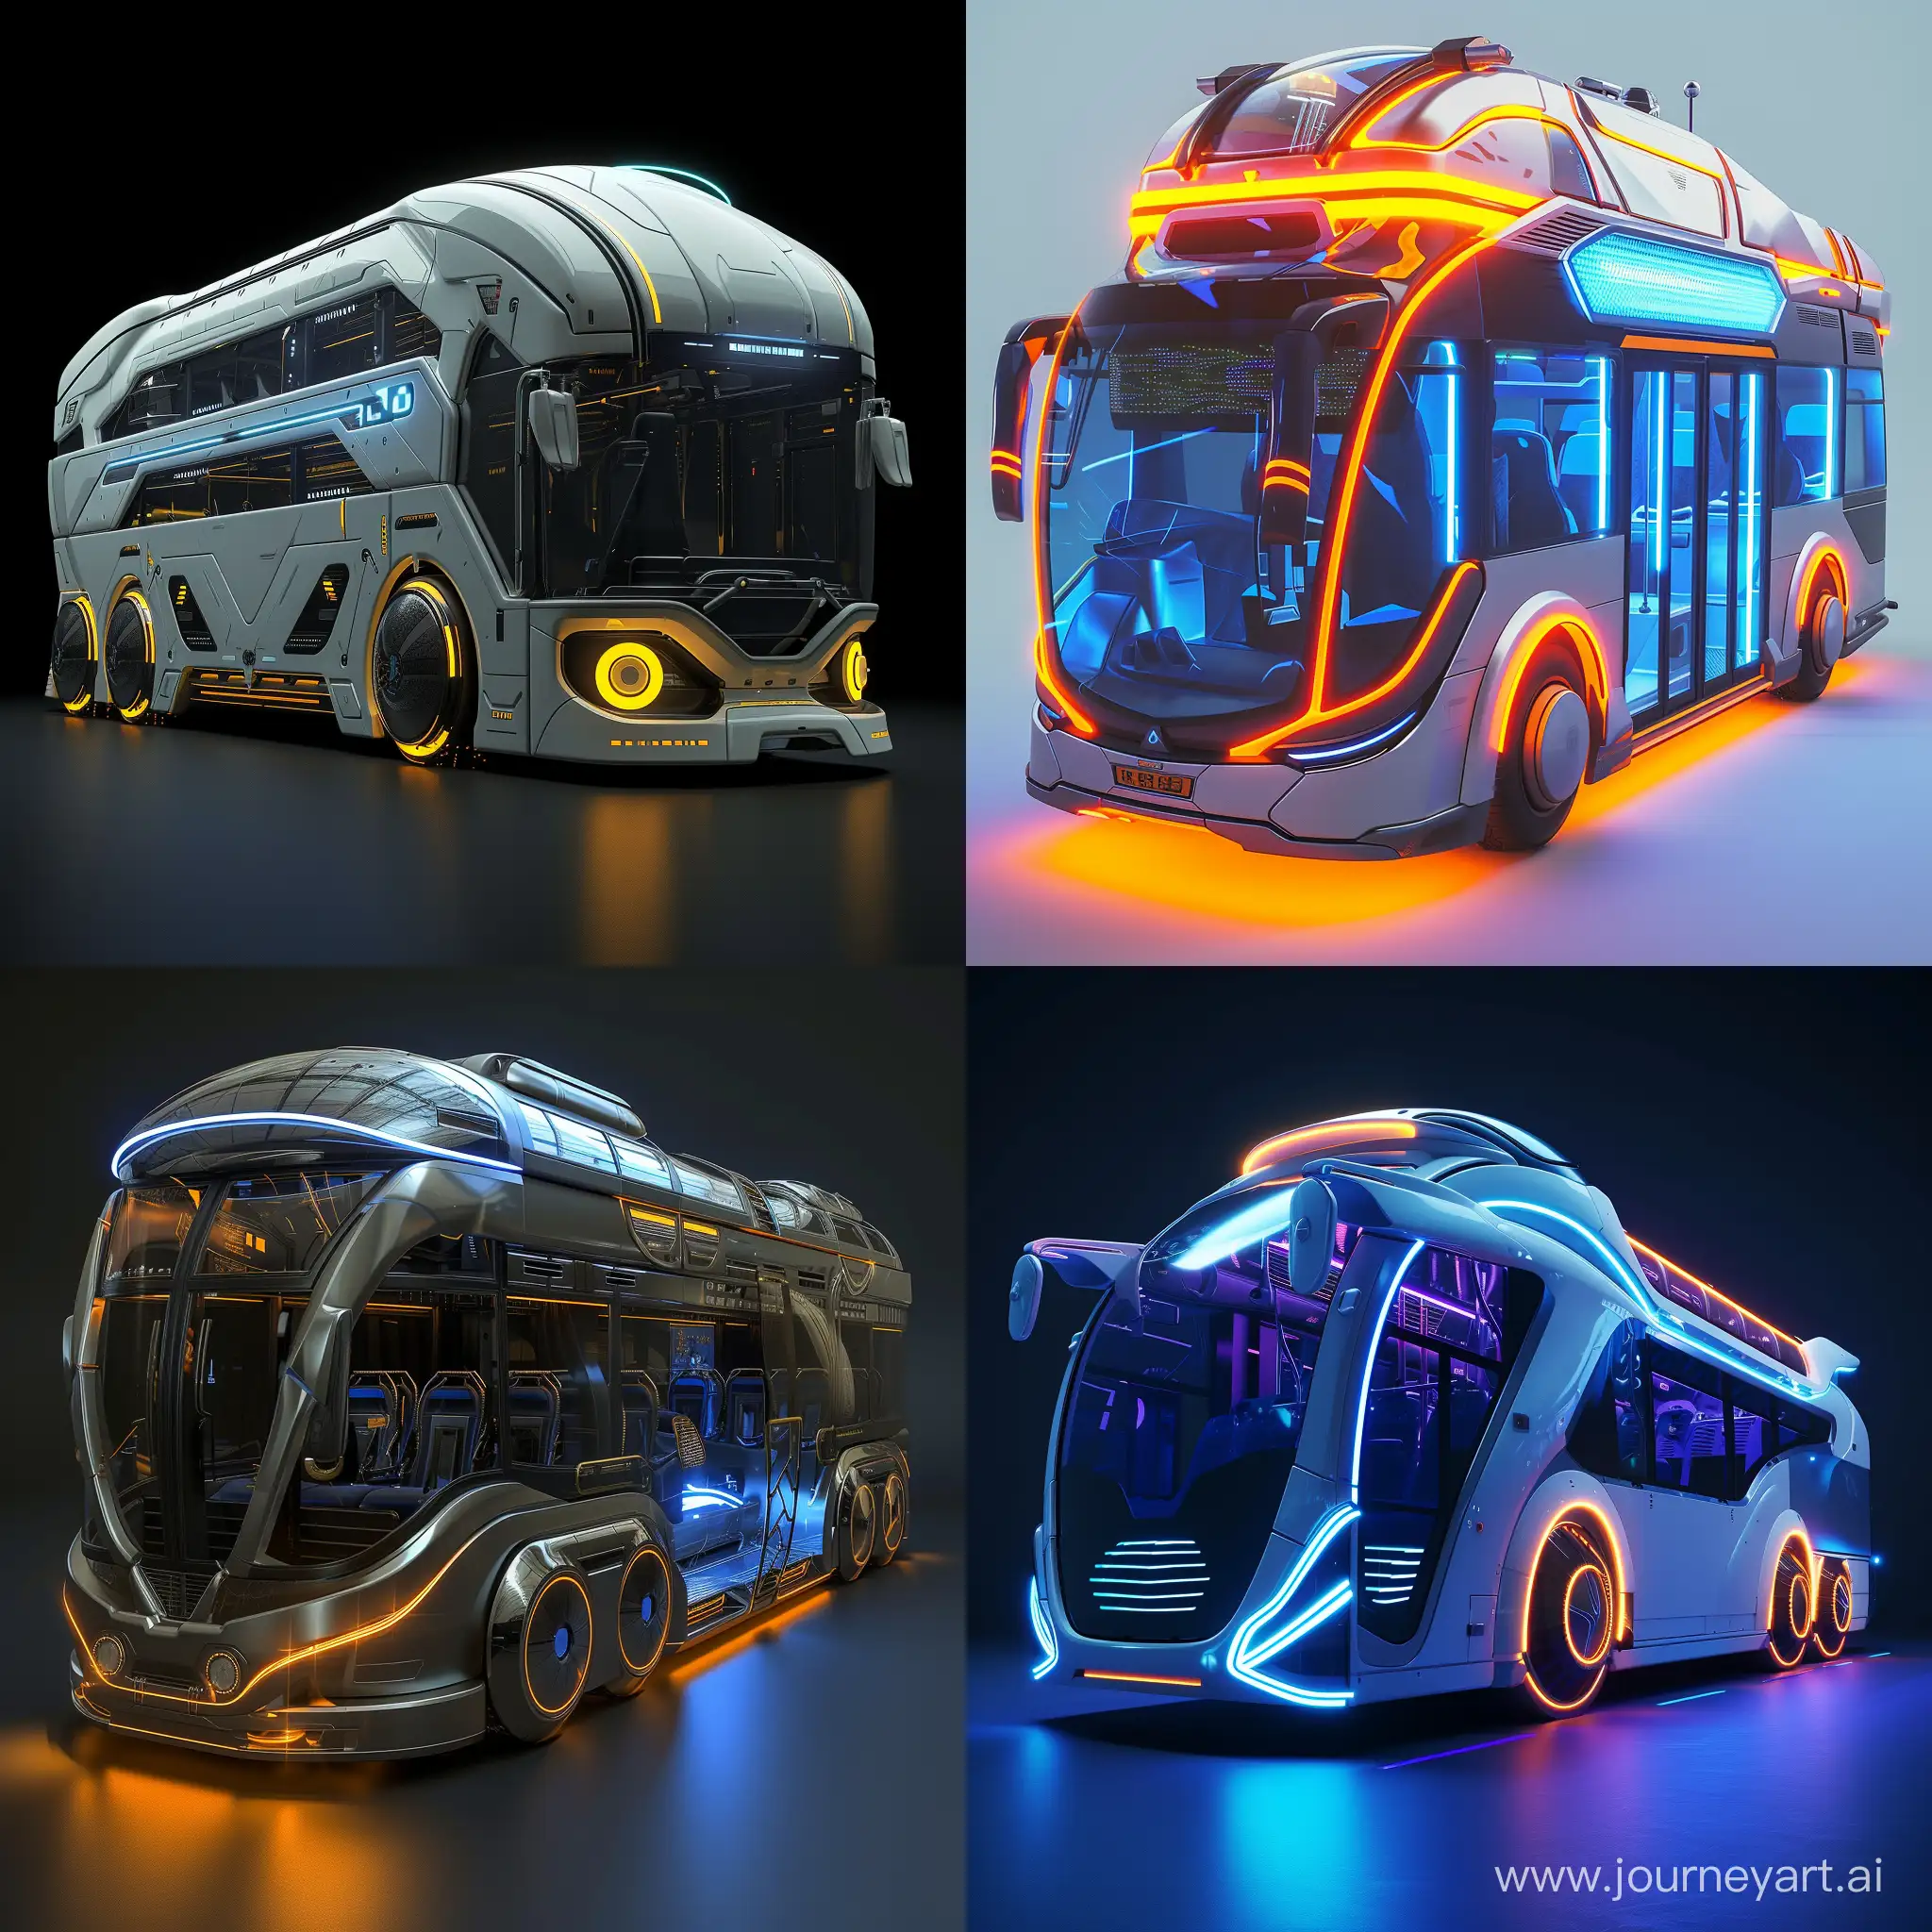 Futuristic bus, in sci-fi style